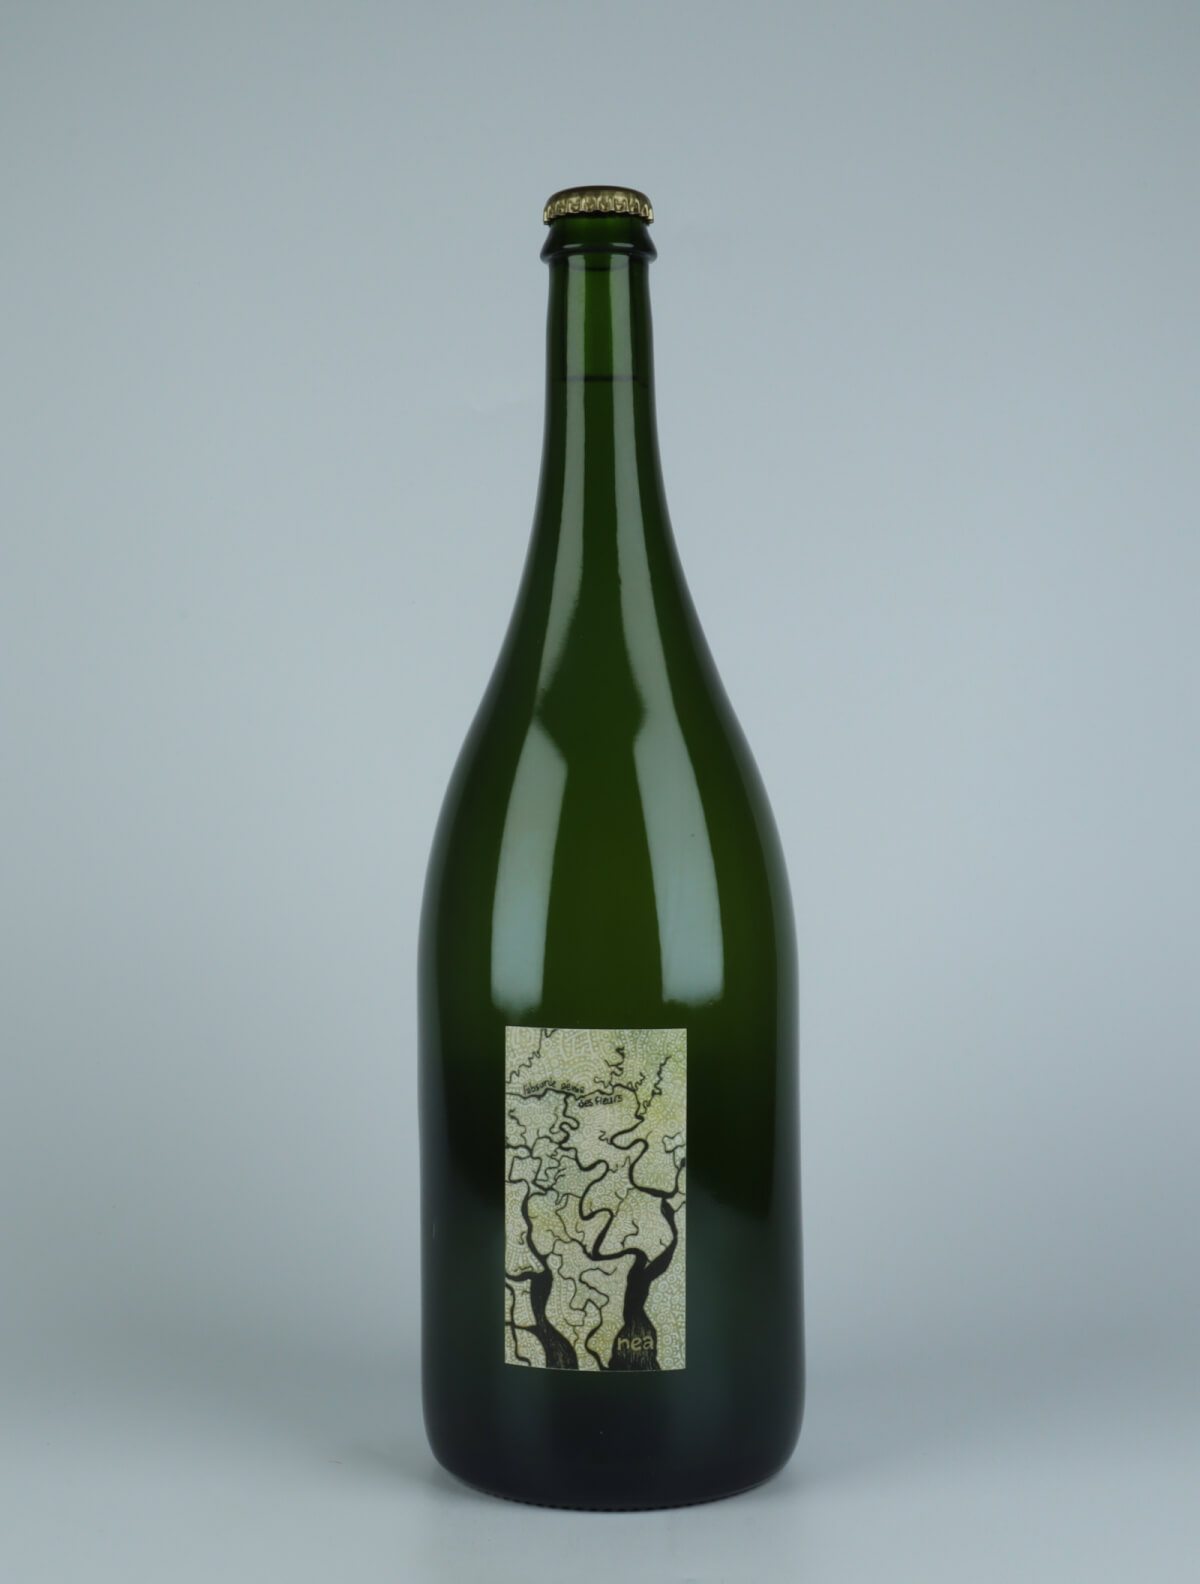 En flaske 2021 Nea - Magnum Hvidvin fra Absurde Génie des Fleurs, Languedoc i Frankrig